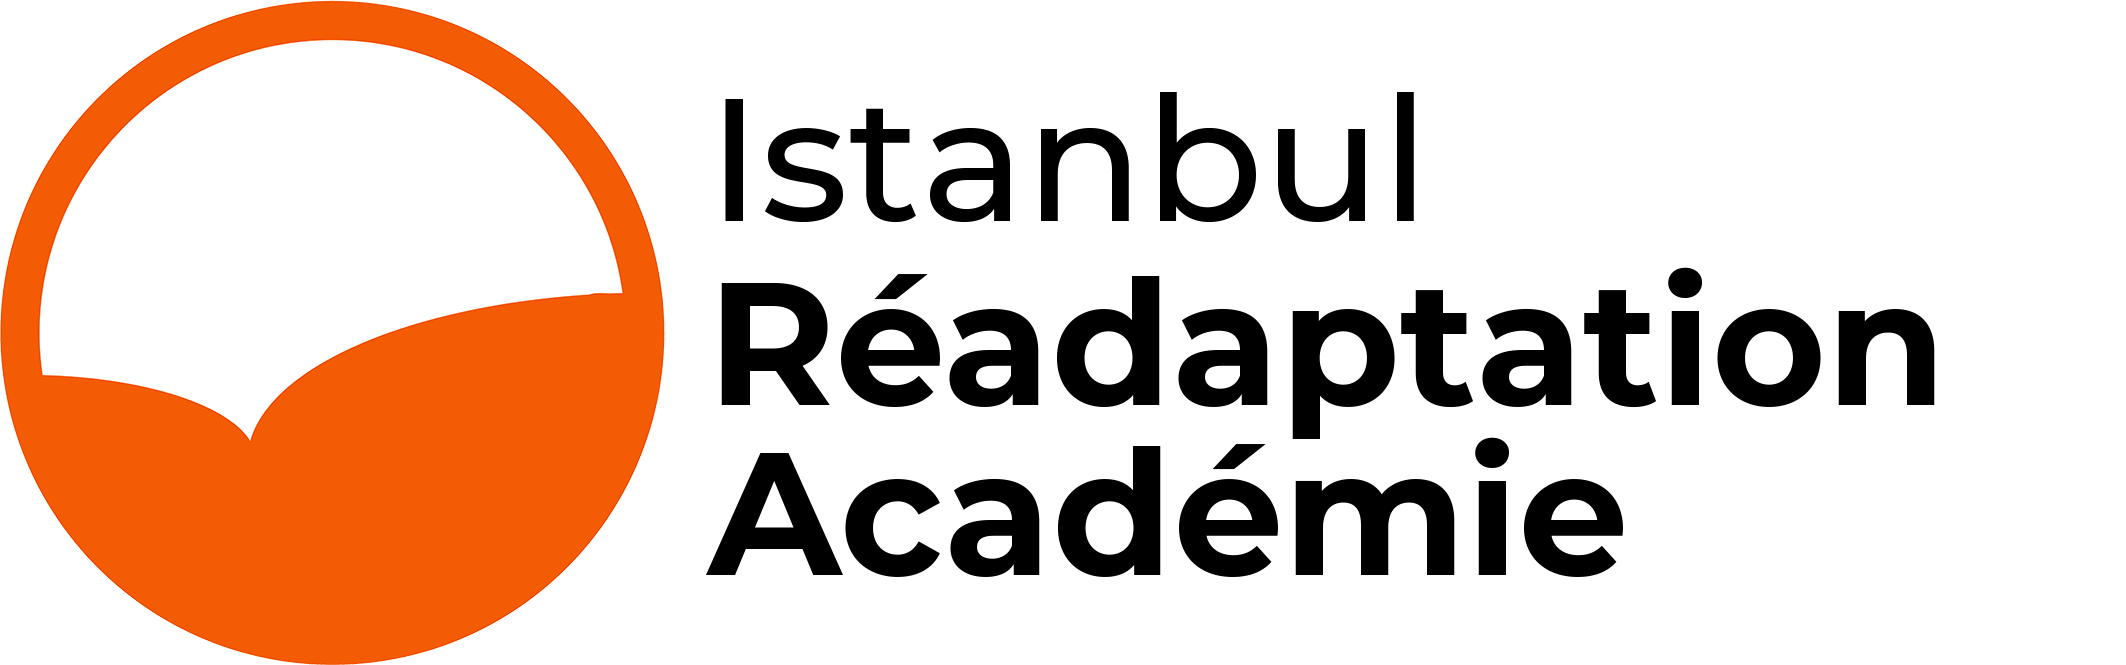 académie de réadaptation d'istanbul en turquie